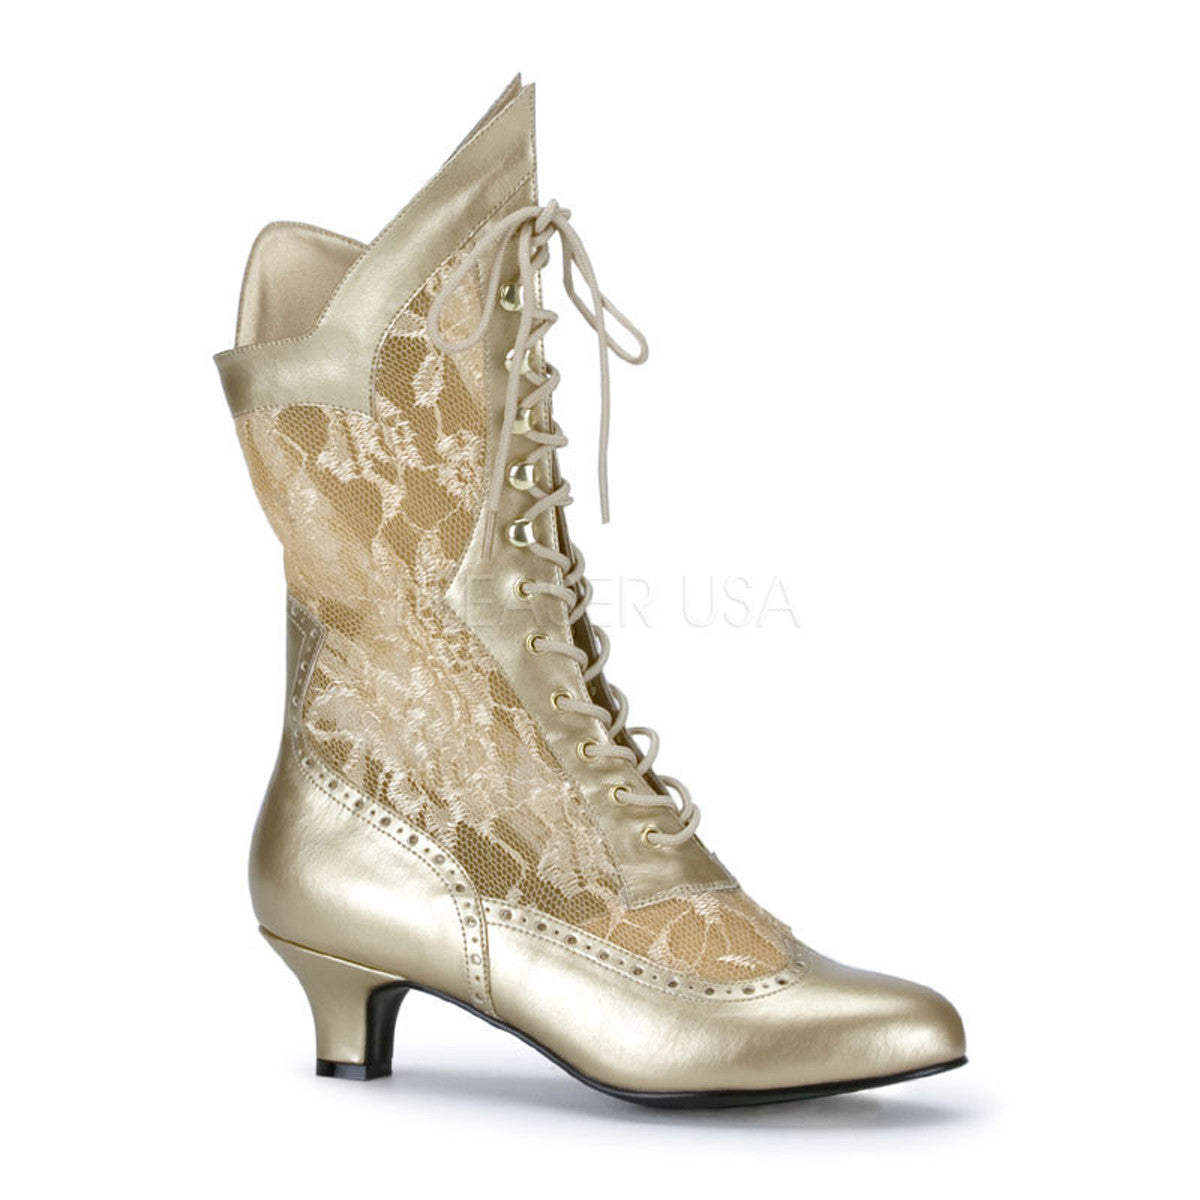 FUNTASMA DAME-115 Gold Pu-Lace Ankle Boots - Shoecup.com